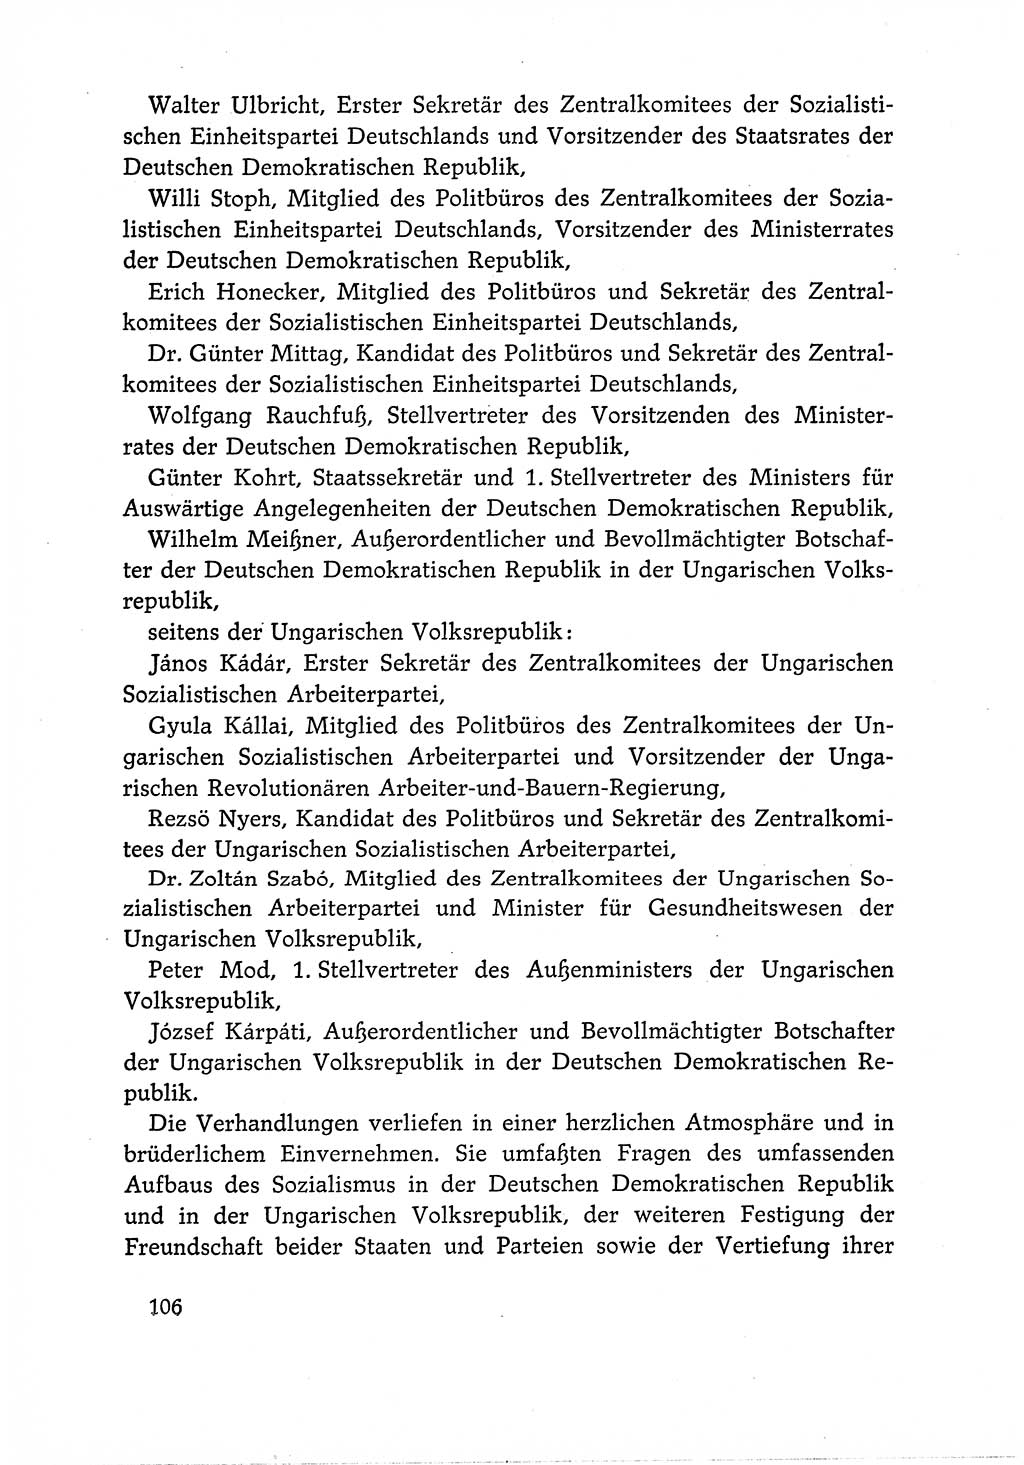 Dokumente der Sozialistischen Einheitspartei Deutschlands (SED) [Deutsche Demokratische Republik (DDR)] 1966-1967, Seite 106 (Dok. SED DDR 1966-1967, S. 106)